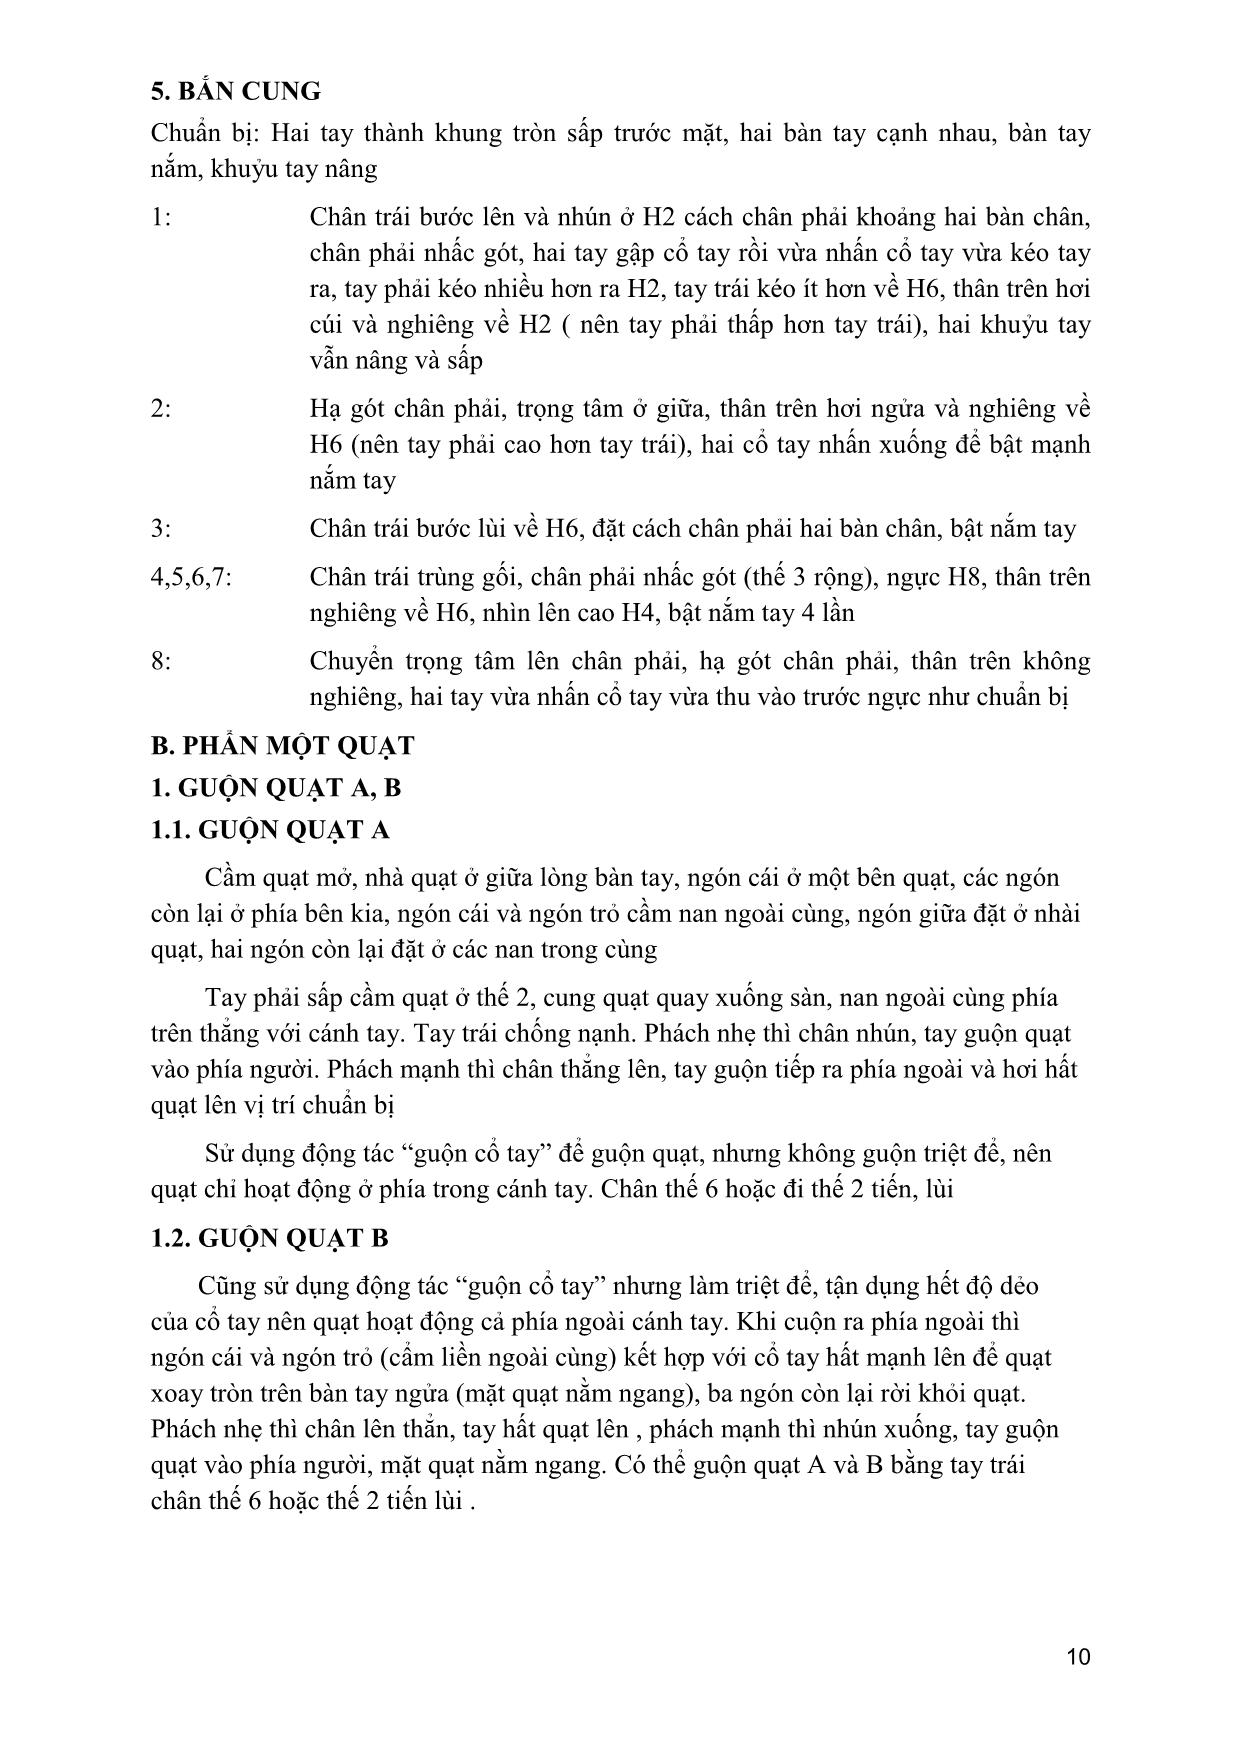 Giáo trình Múa dân gian dân tộc Việt Nam 2 trang 9